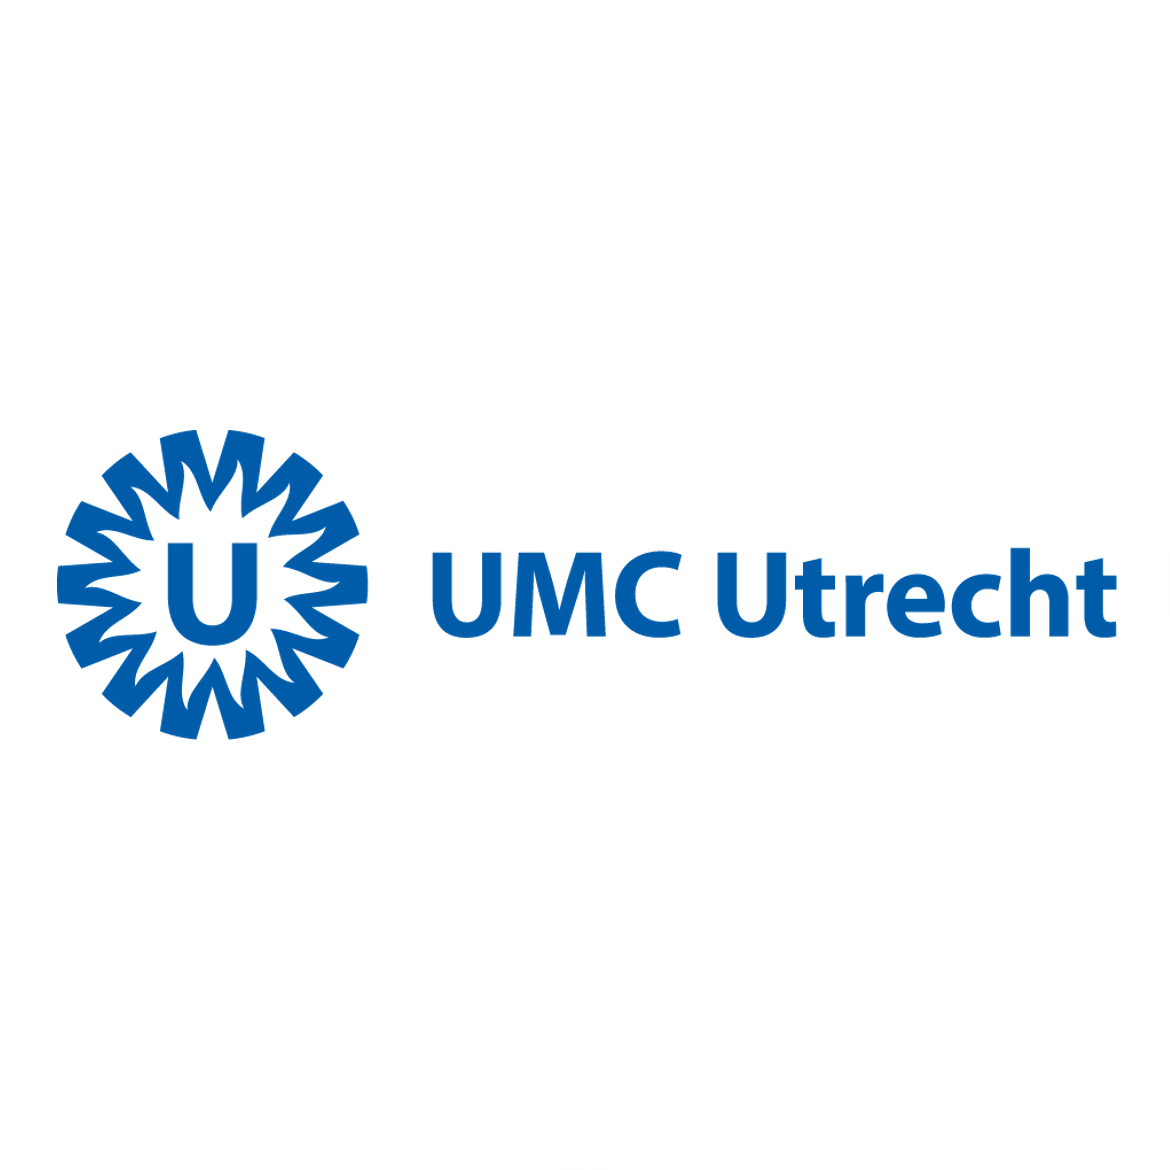 UMC Utrecht studies